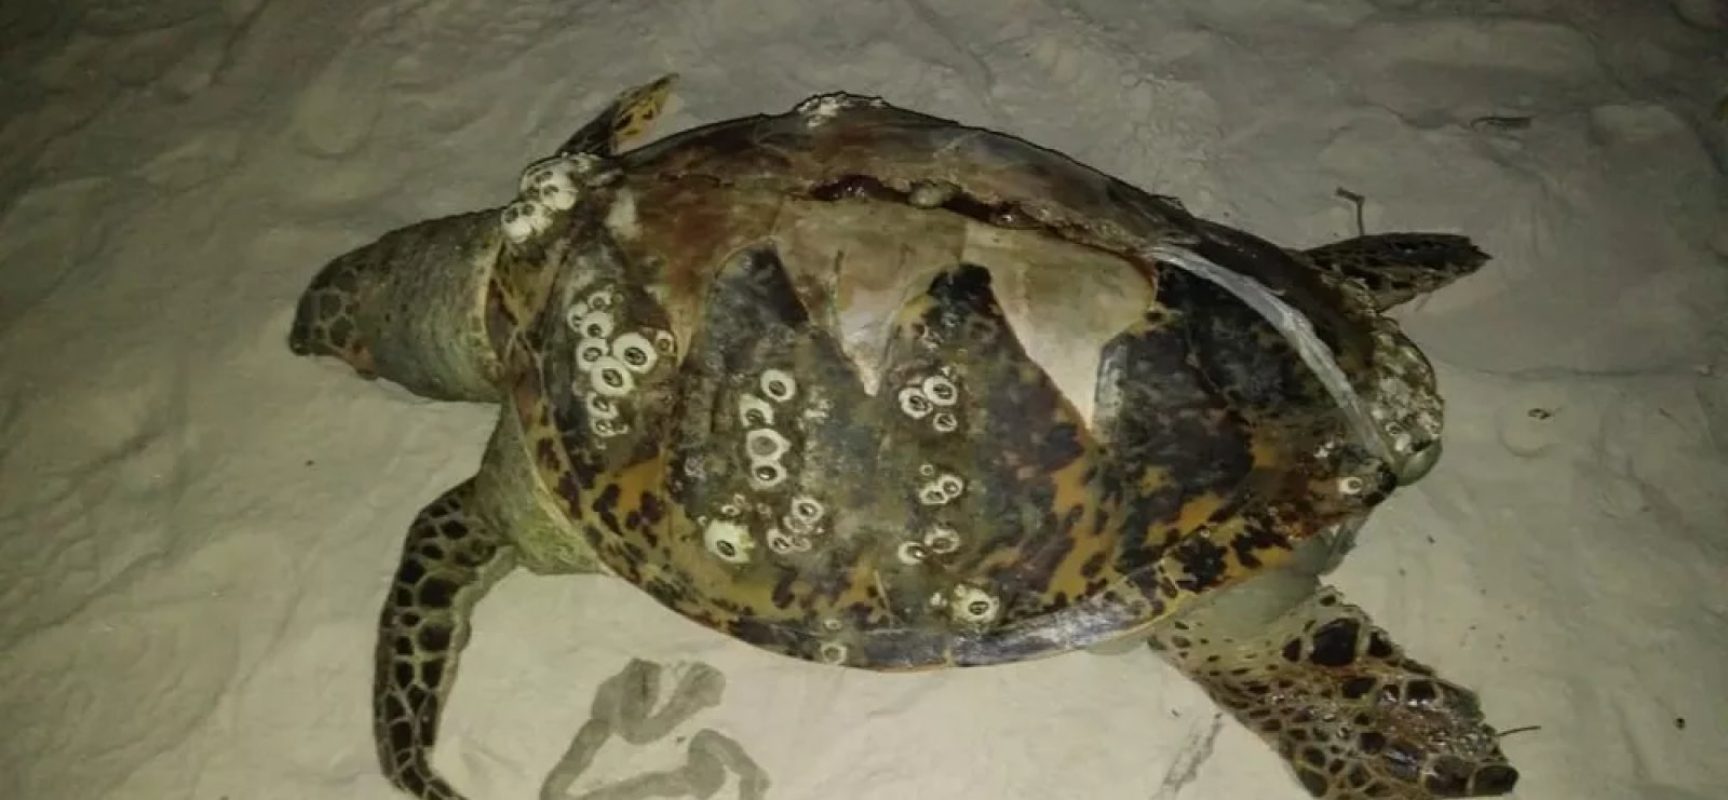 Três tartarugas são encontradas encalhadas no sul da Bahia